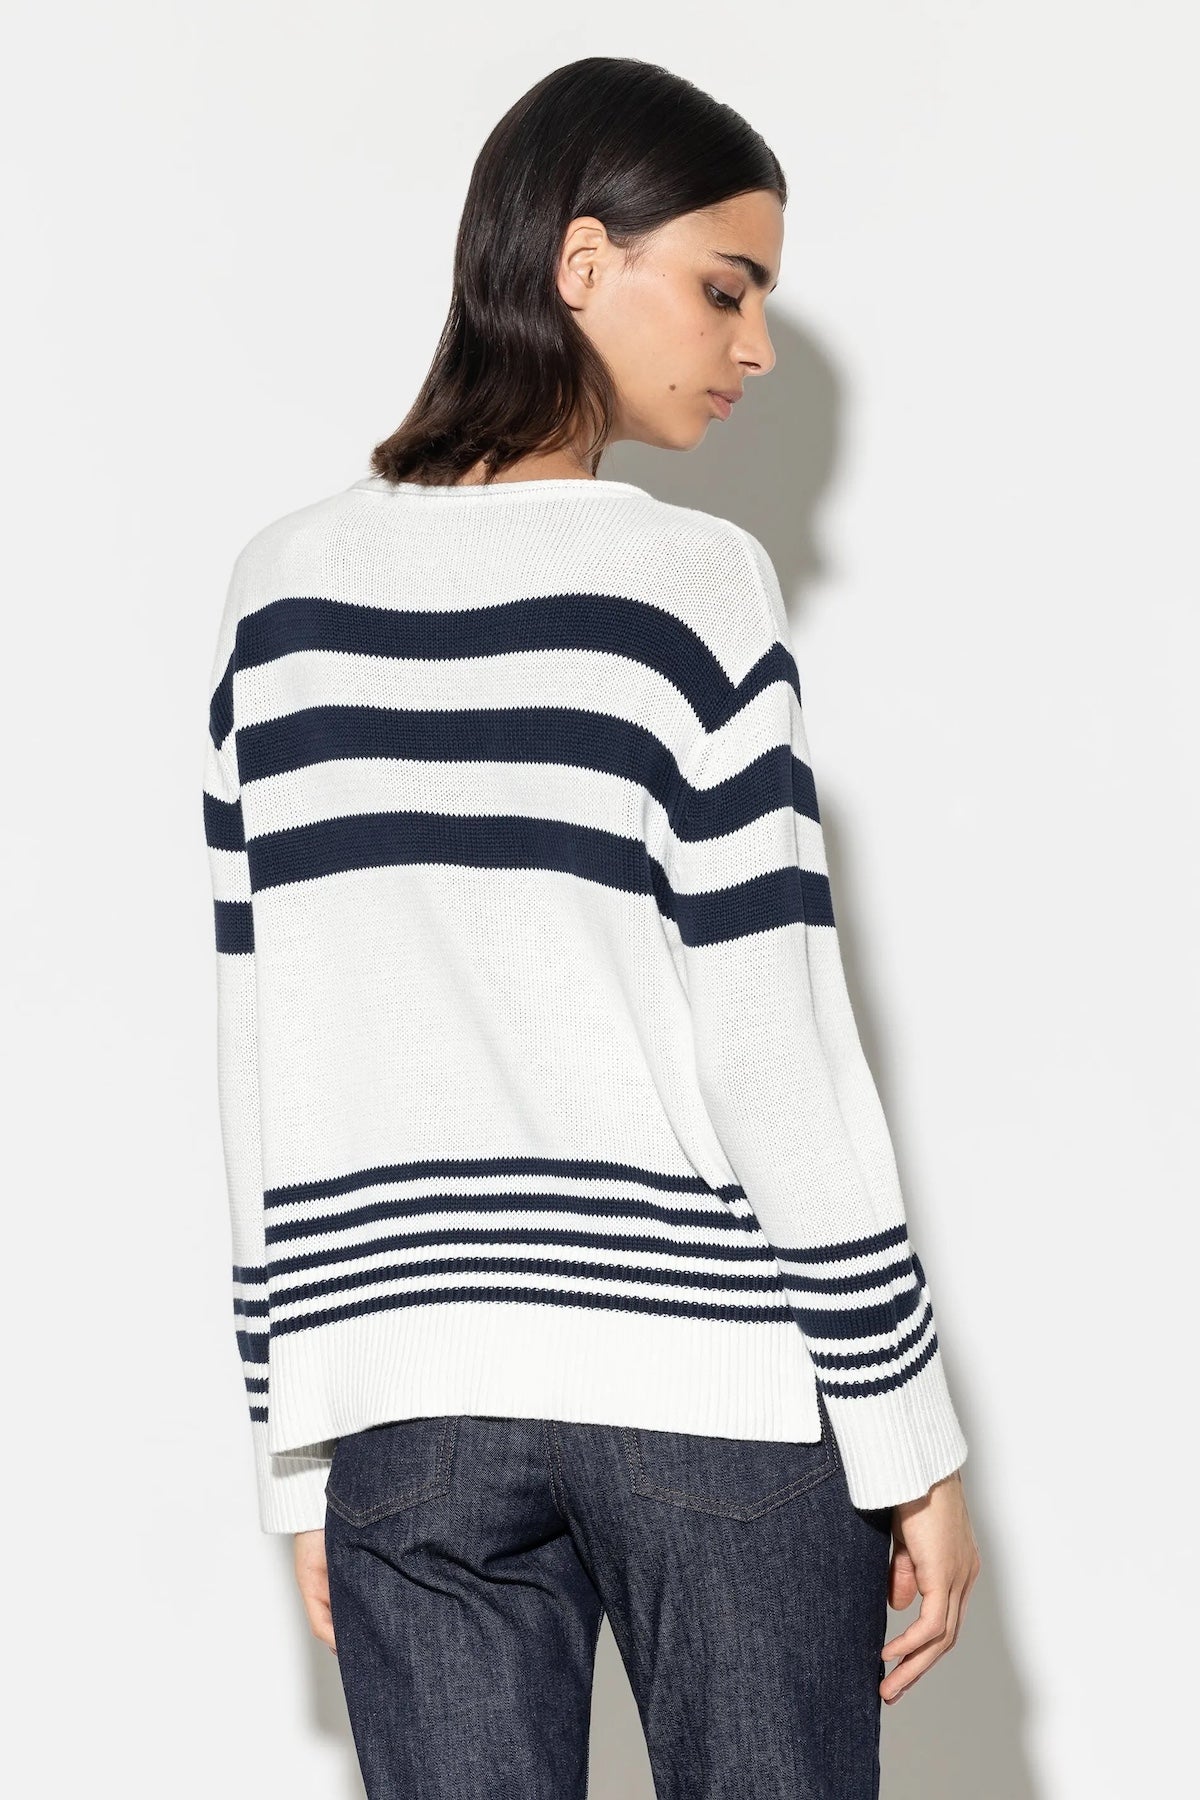 Off White & Dark Navy Striped Cotton Sweater